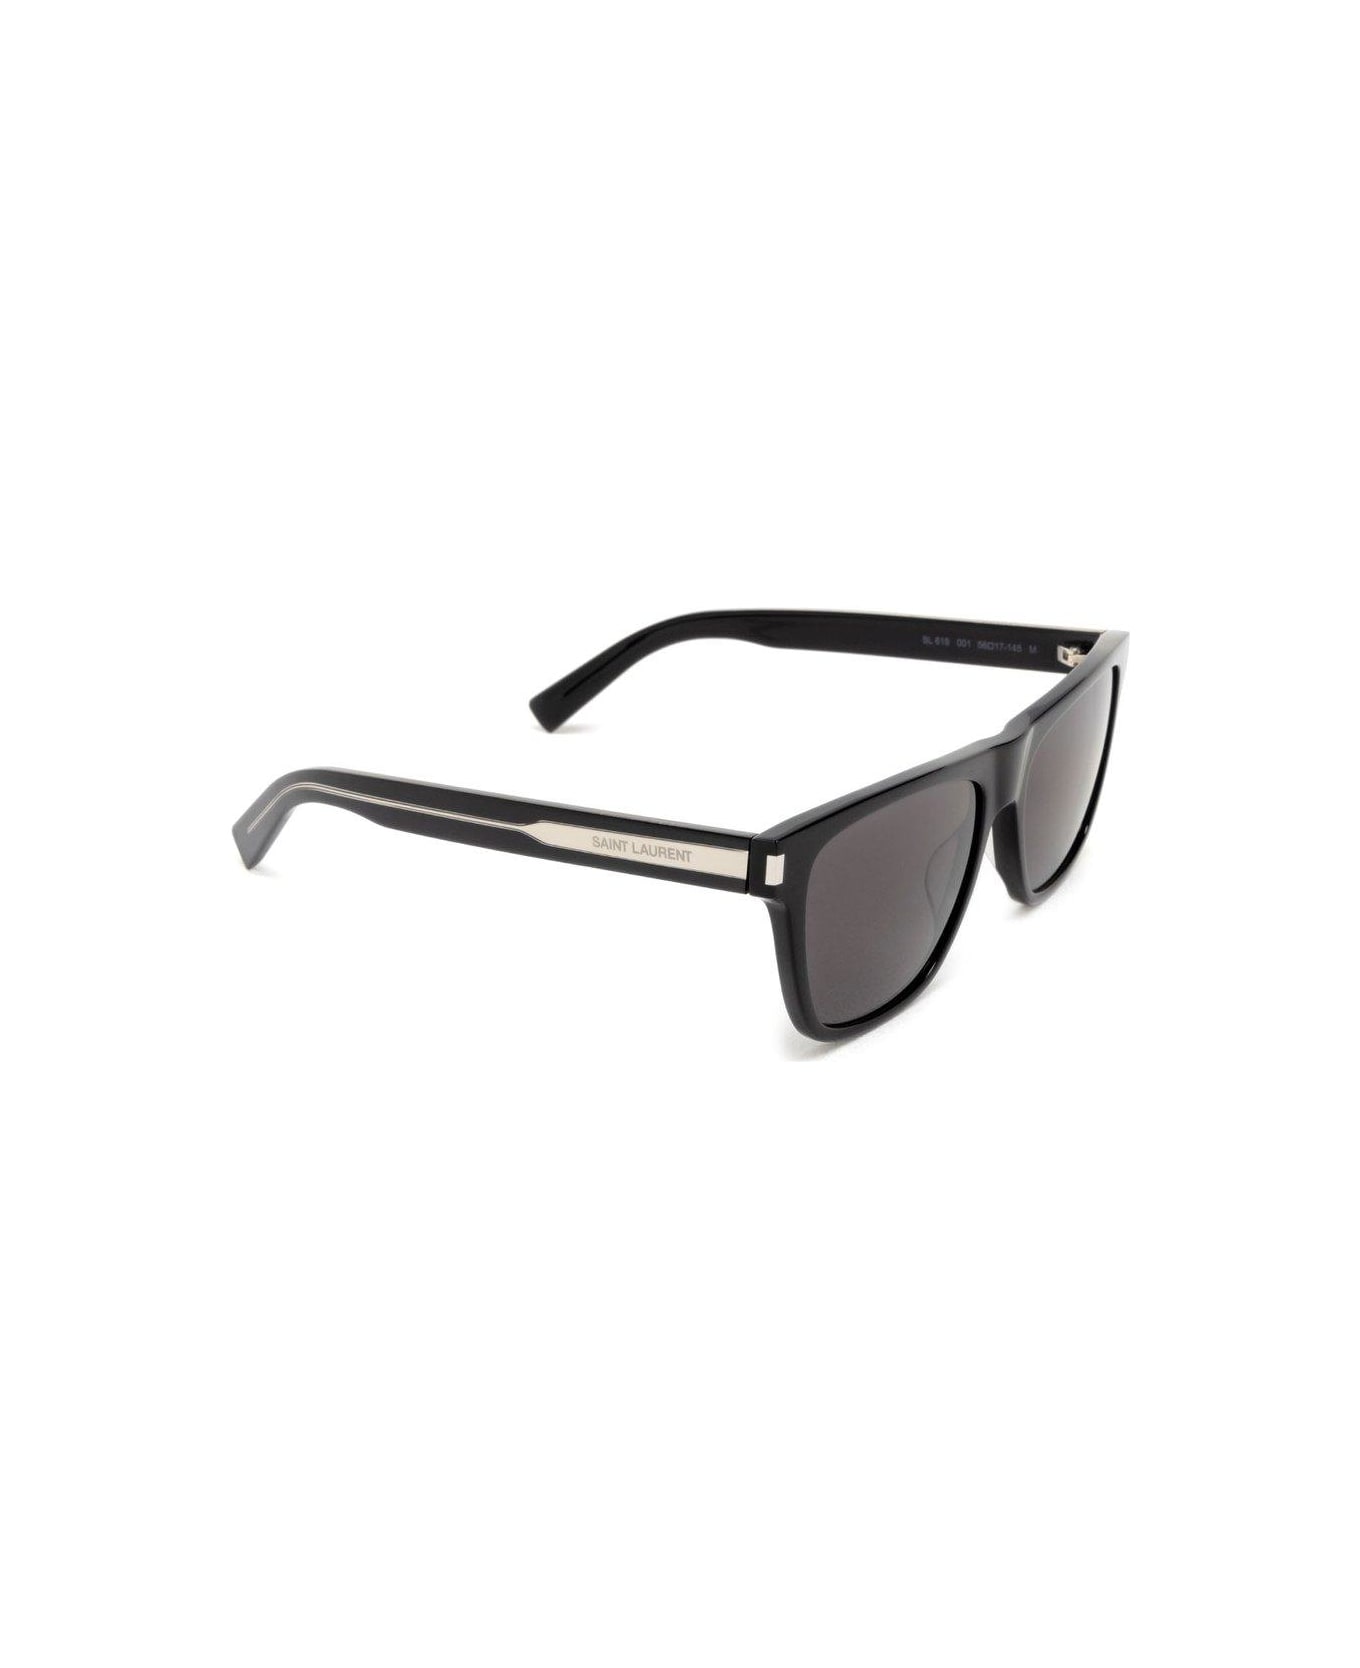 Saint Laurent Eyewear Square Frame Sunglasses Sunglasses - 001 BLACK CRYSTAL BLACK